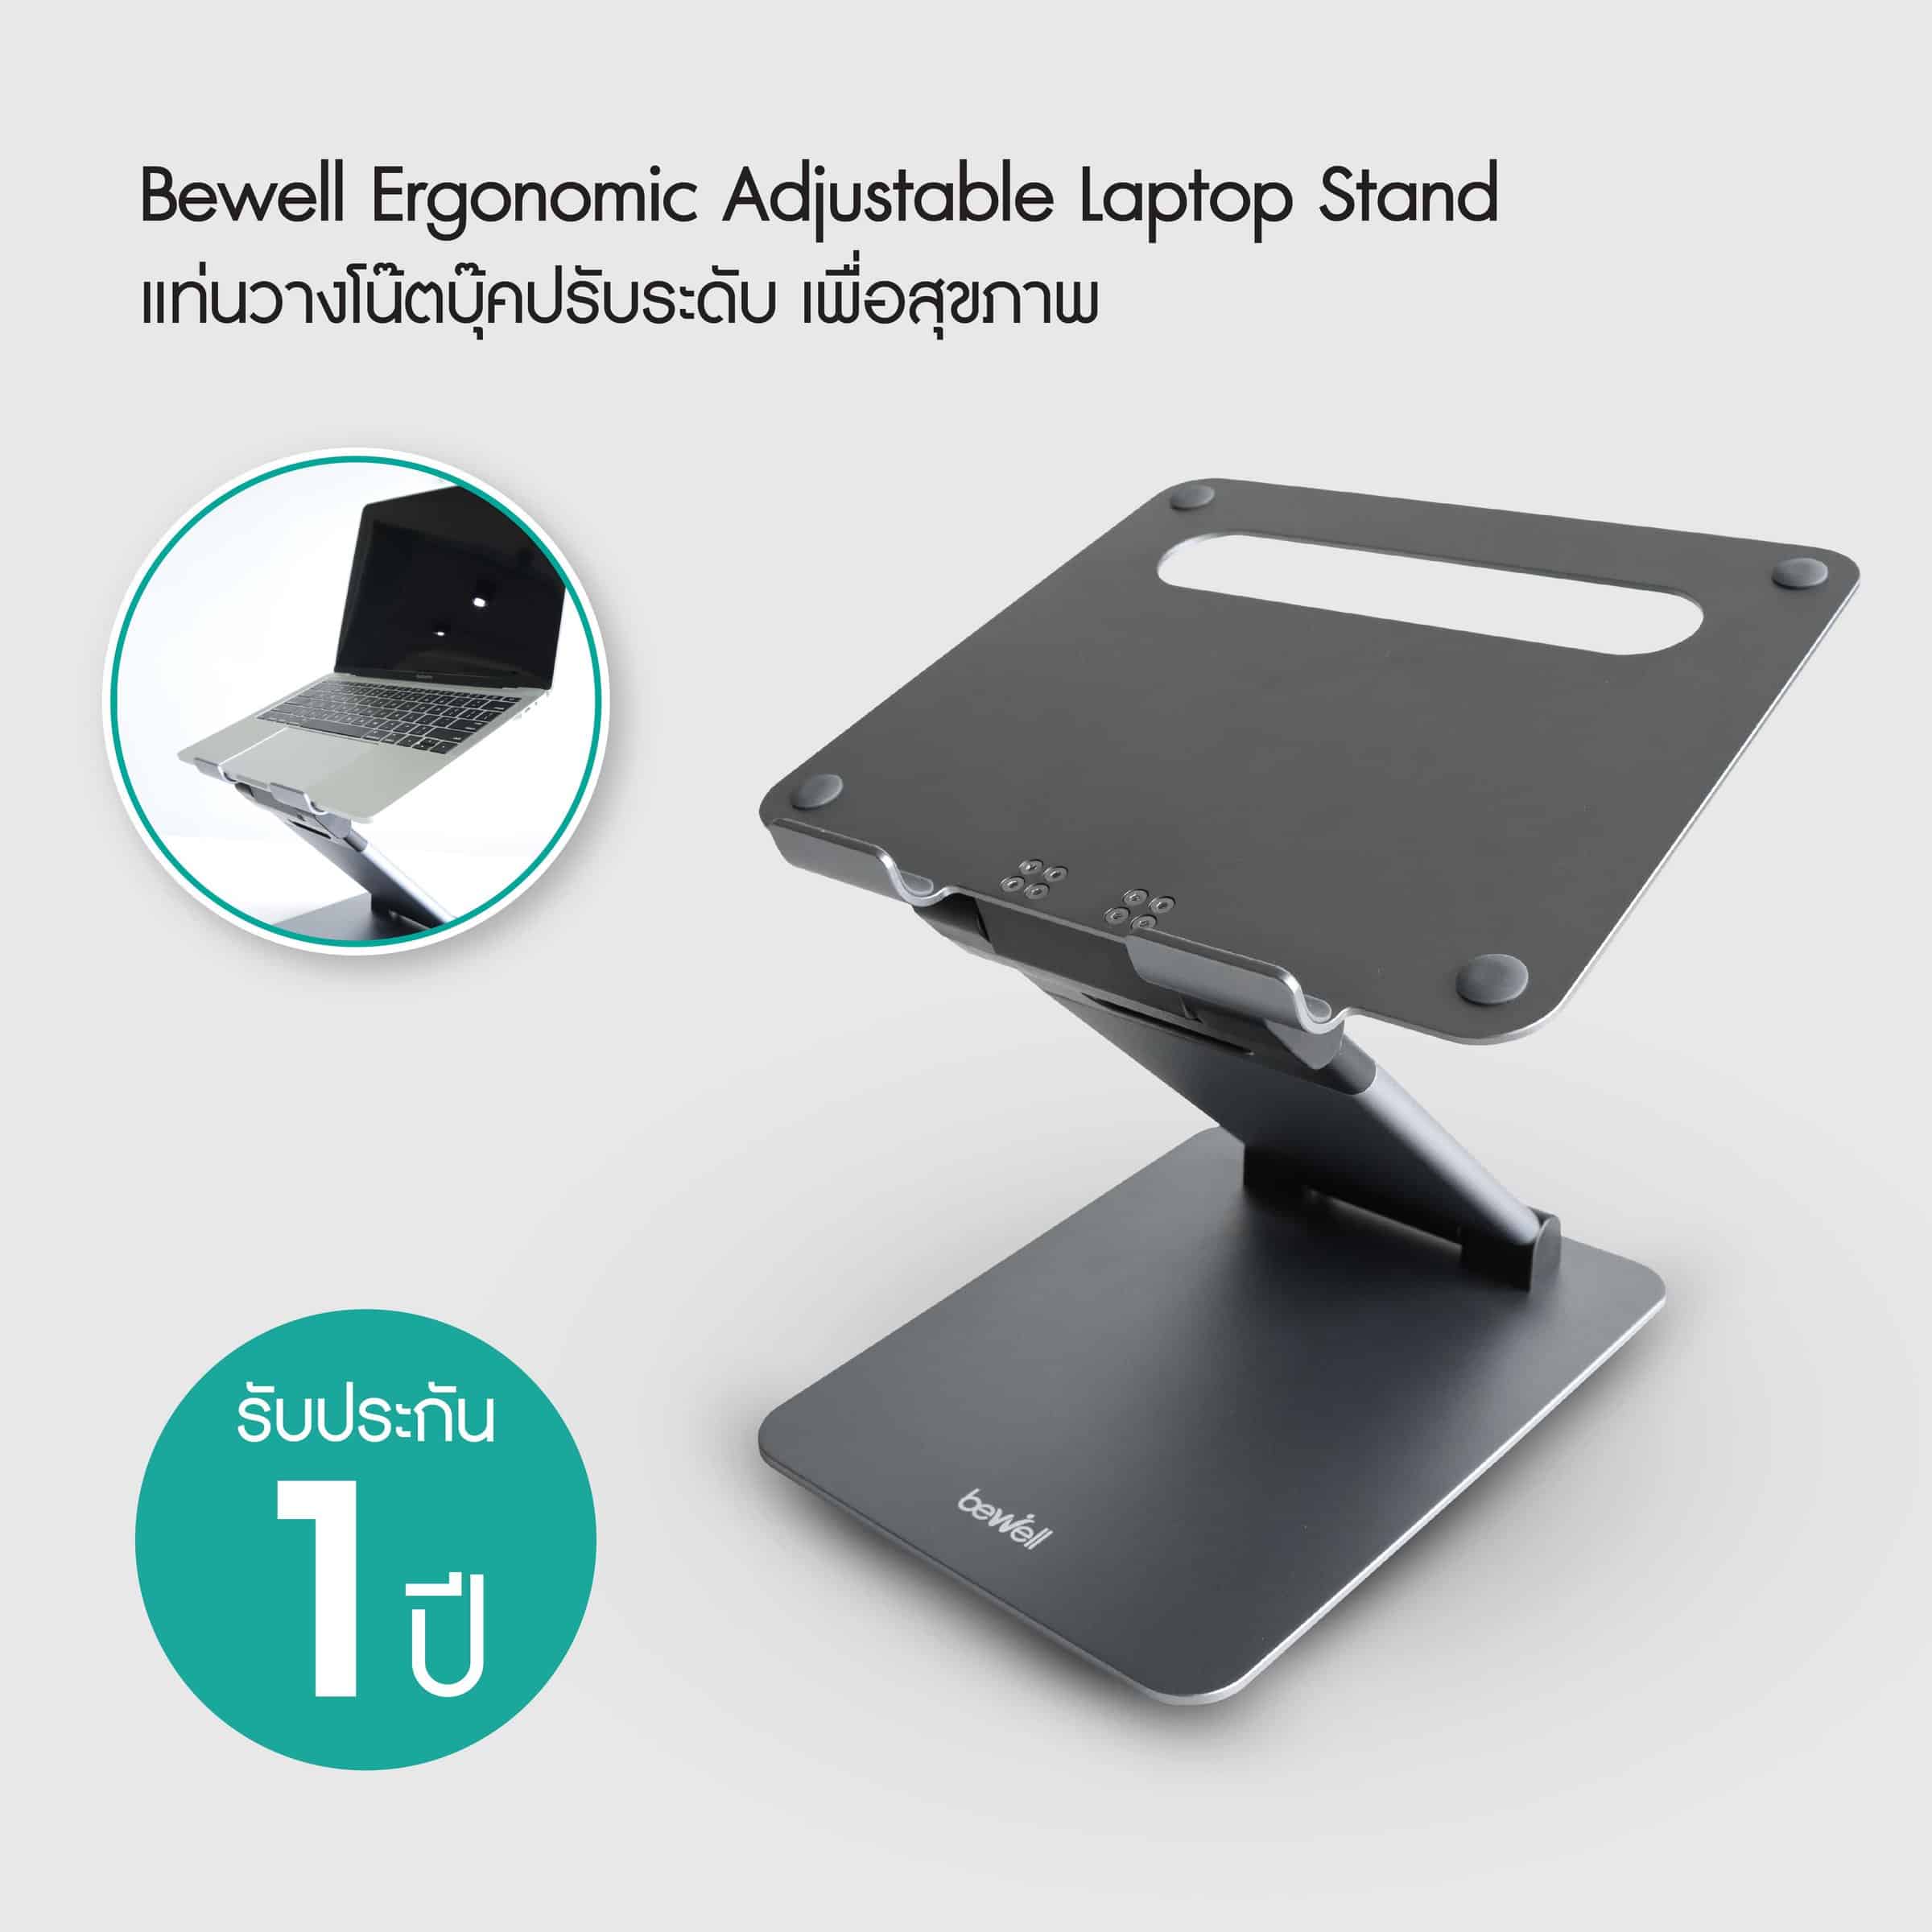 แท่นวางโน๊ตบุ๊คปรับระดับ เพื่อสุขภาพ | Ergonomic Adjustable Laptop Stand -  Bewell